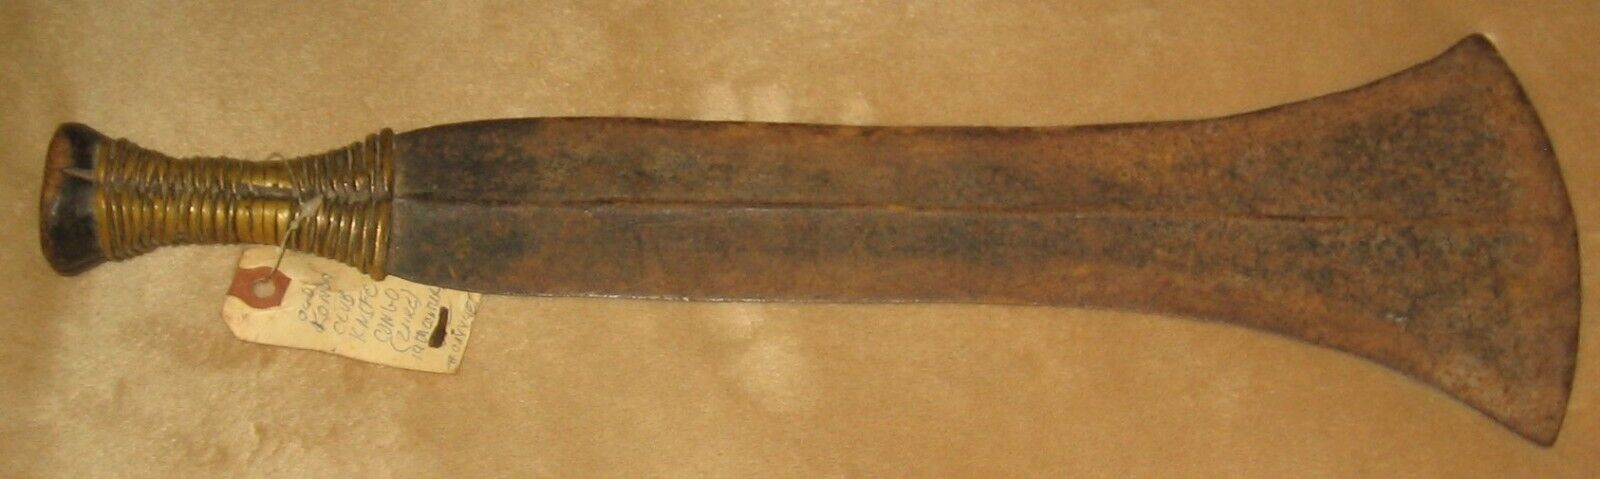 Antique African Ceremonial Knife - 19th C - "konda"  Belgium Congo